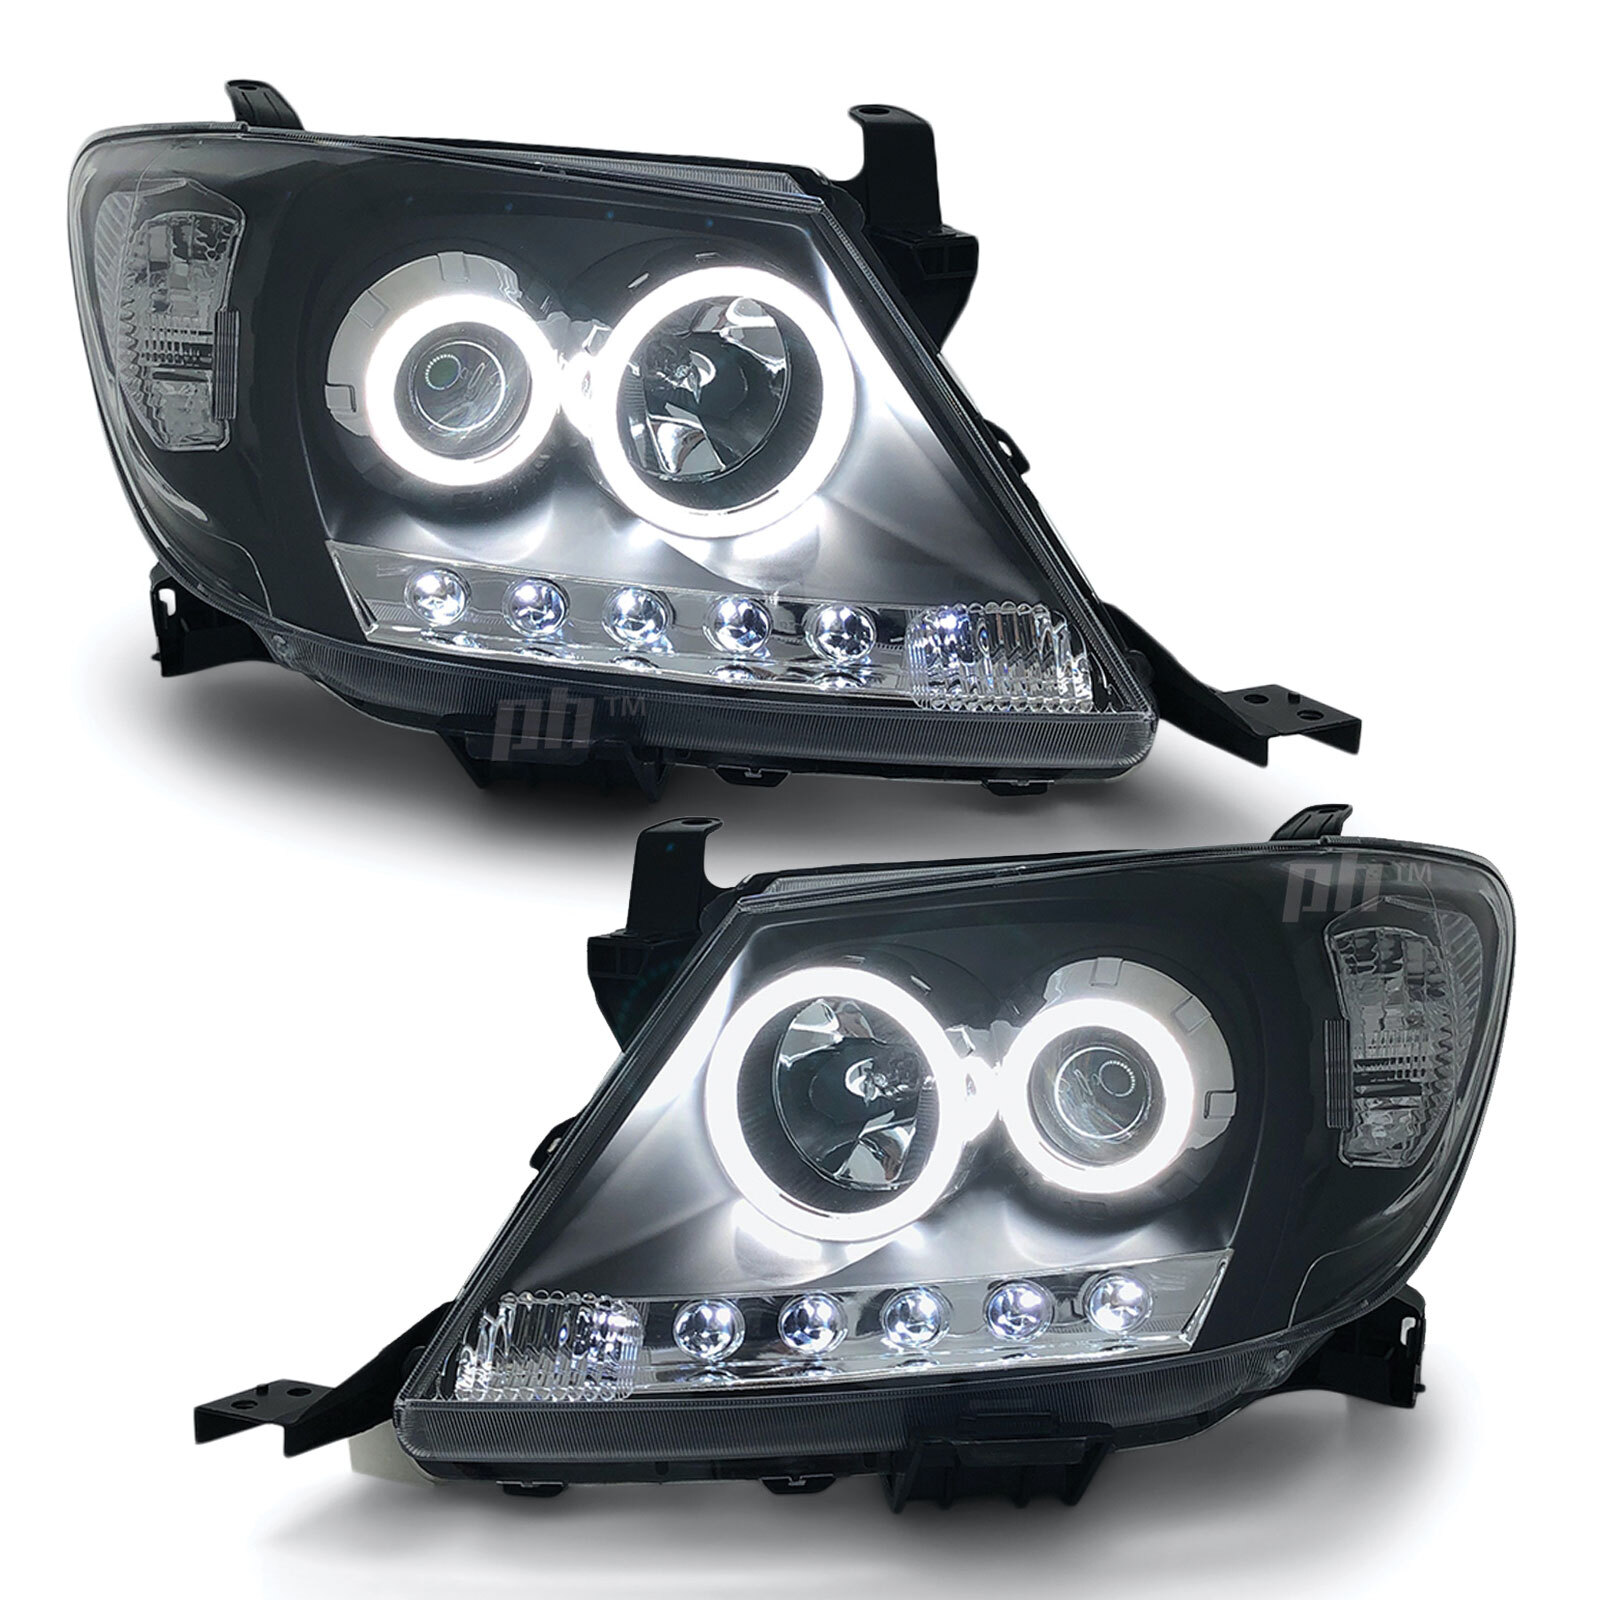 Republik Erhvervelse vision Headlights Black DRL Projector HALO Angel Eyes Fits Toyota Hilux N70  2005-04/11 - Eagle Eyes